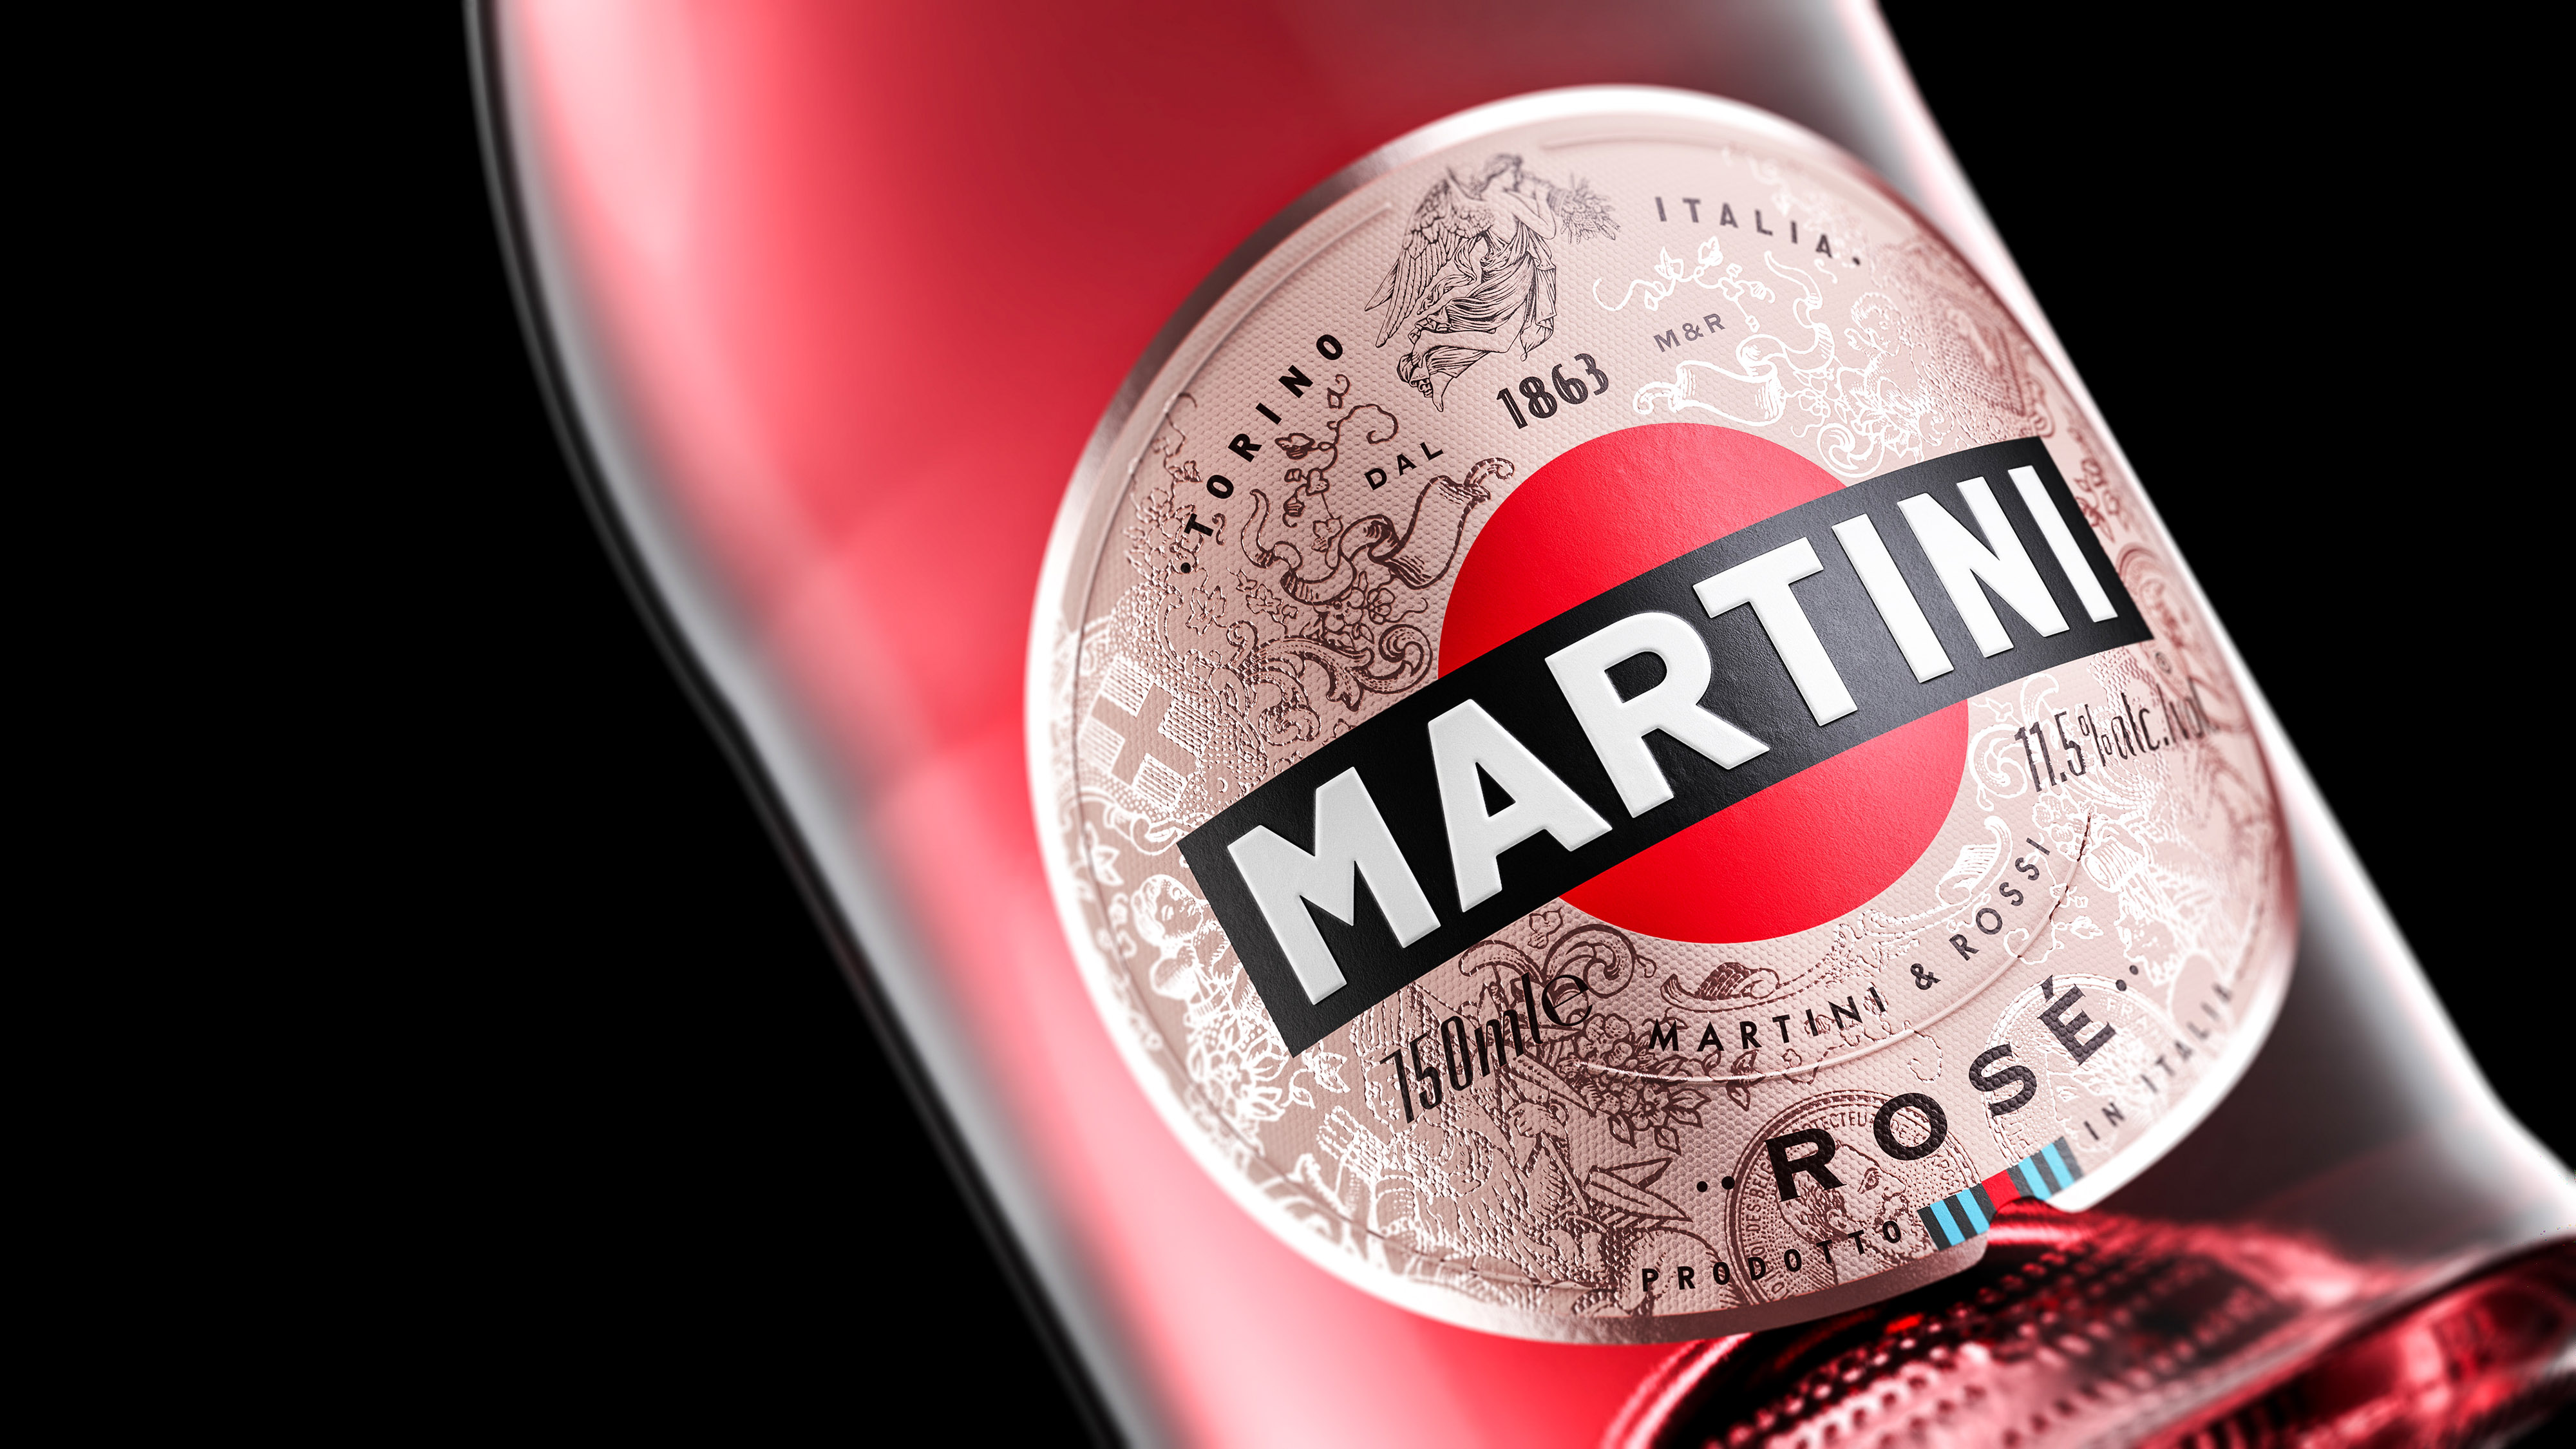 Martini6